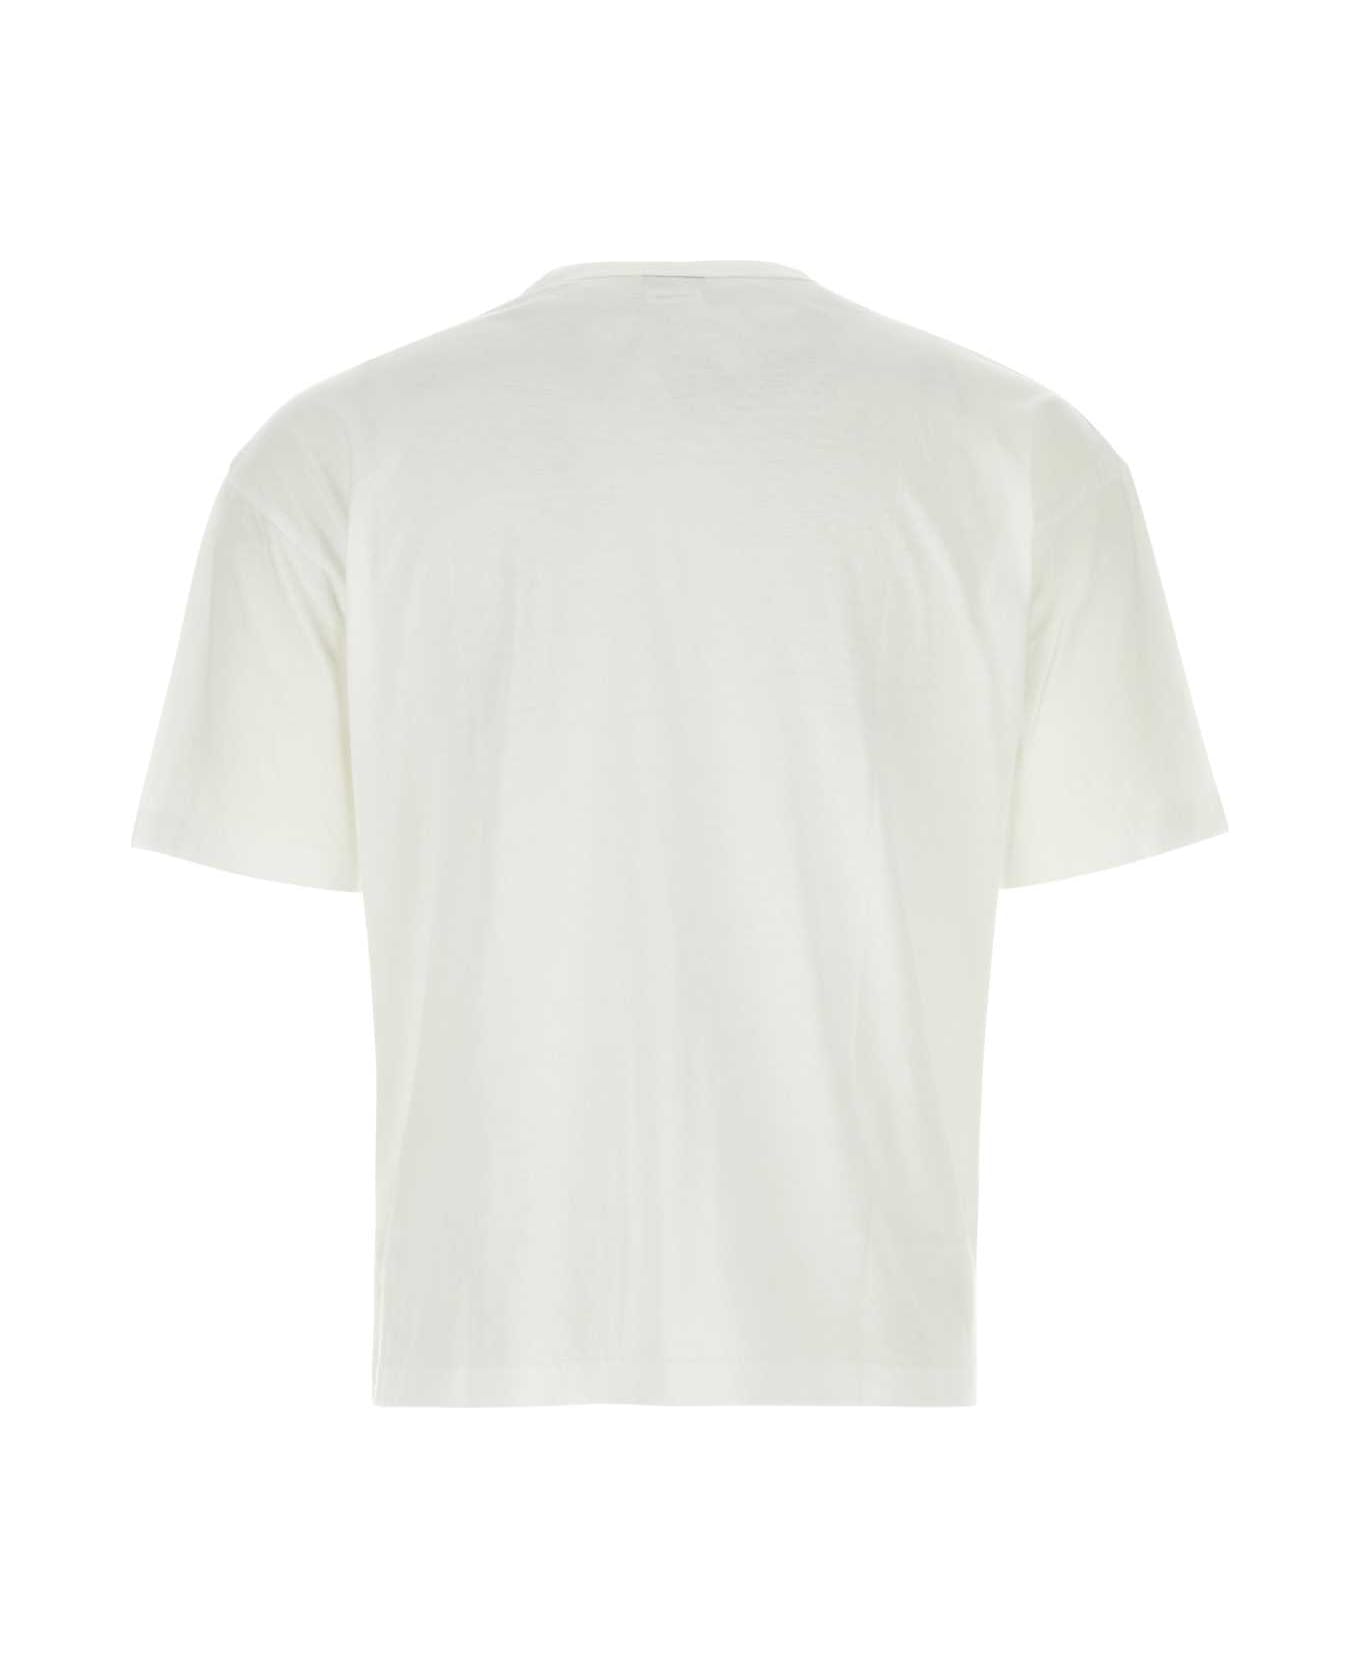 Visvim White Cotton Blend T-shirt Set - WHITE